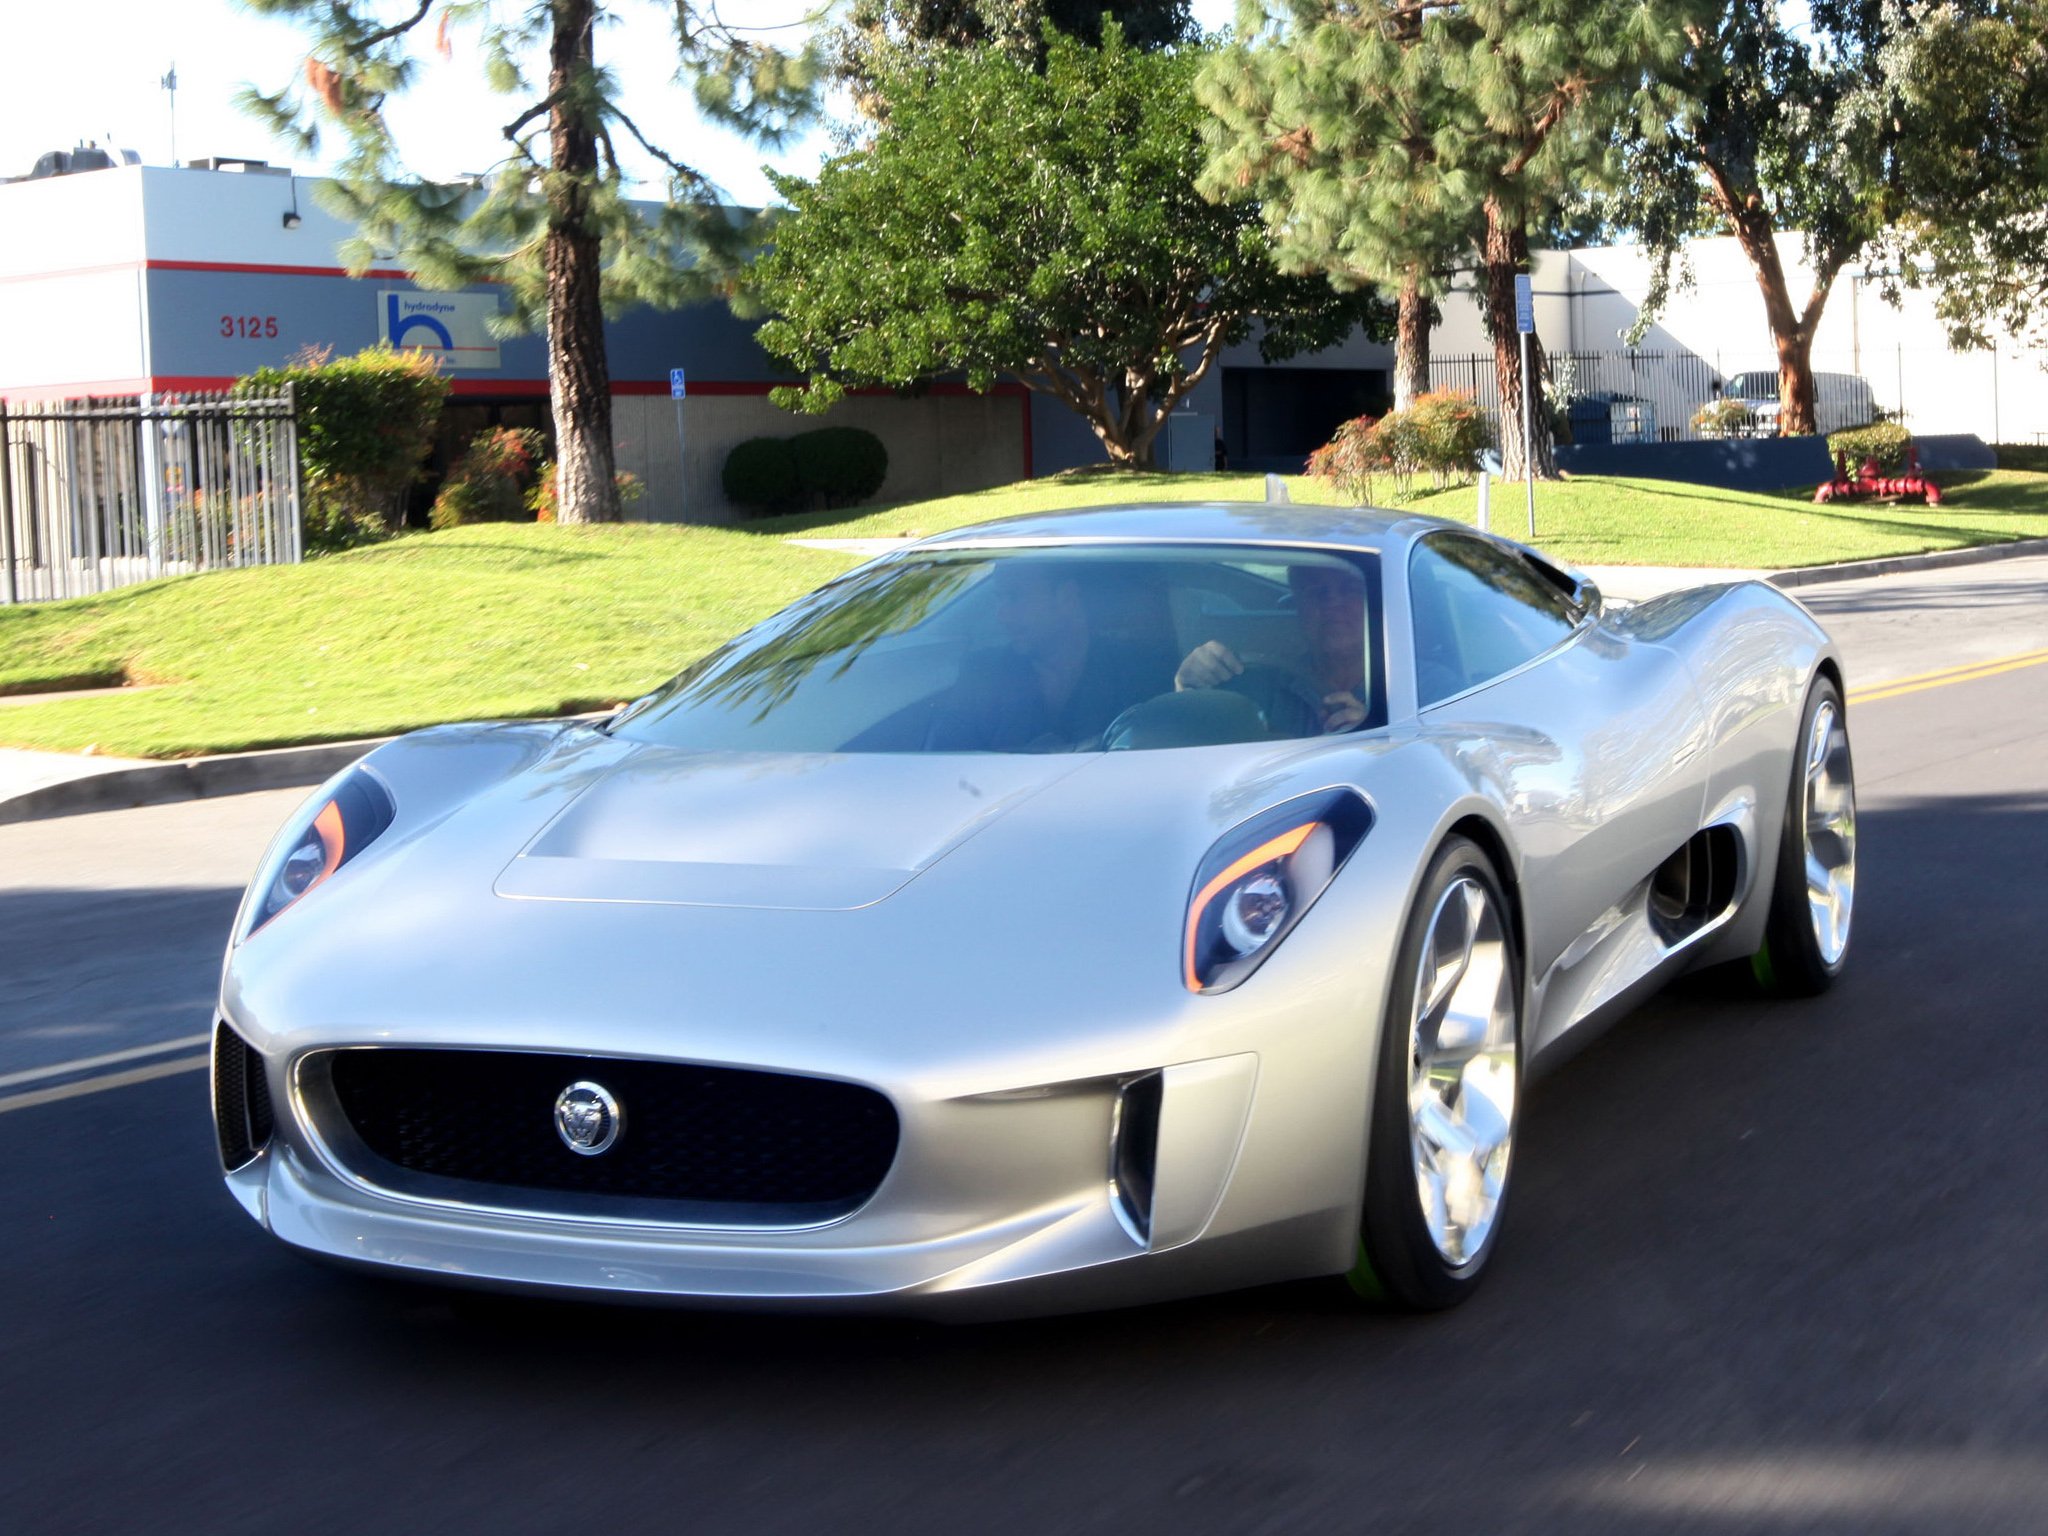 2010, Jaguar, C x75, Concept, Supercar Wallpaper